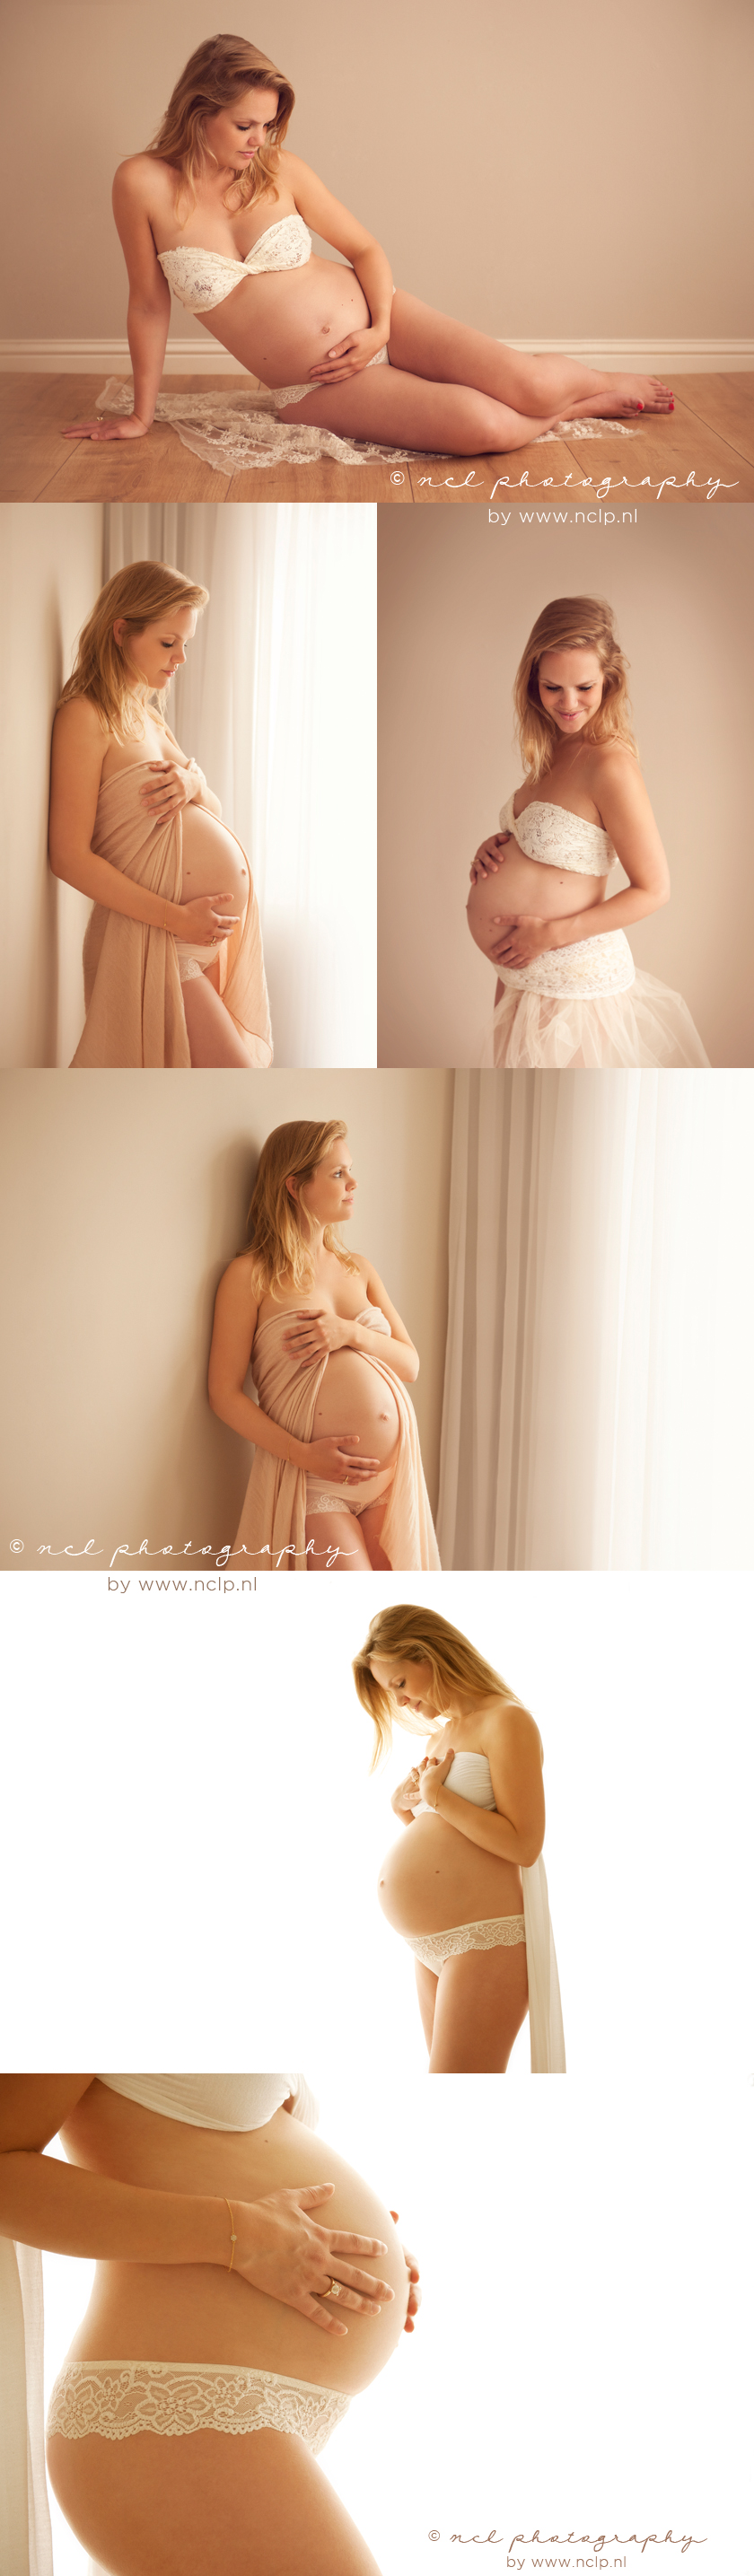 NCL Photography-amsterdam-maternity-blog-zwangerschapsfotografie-036